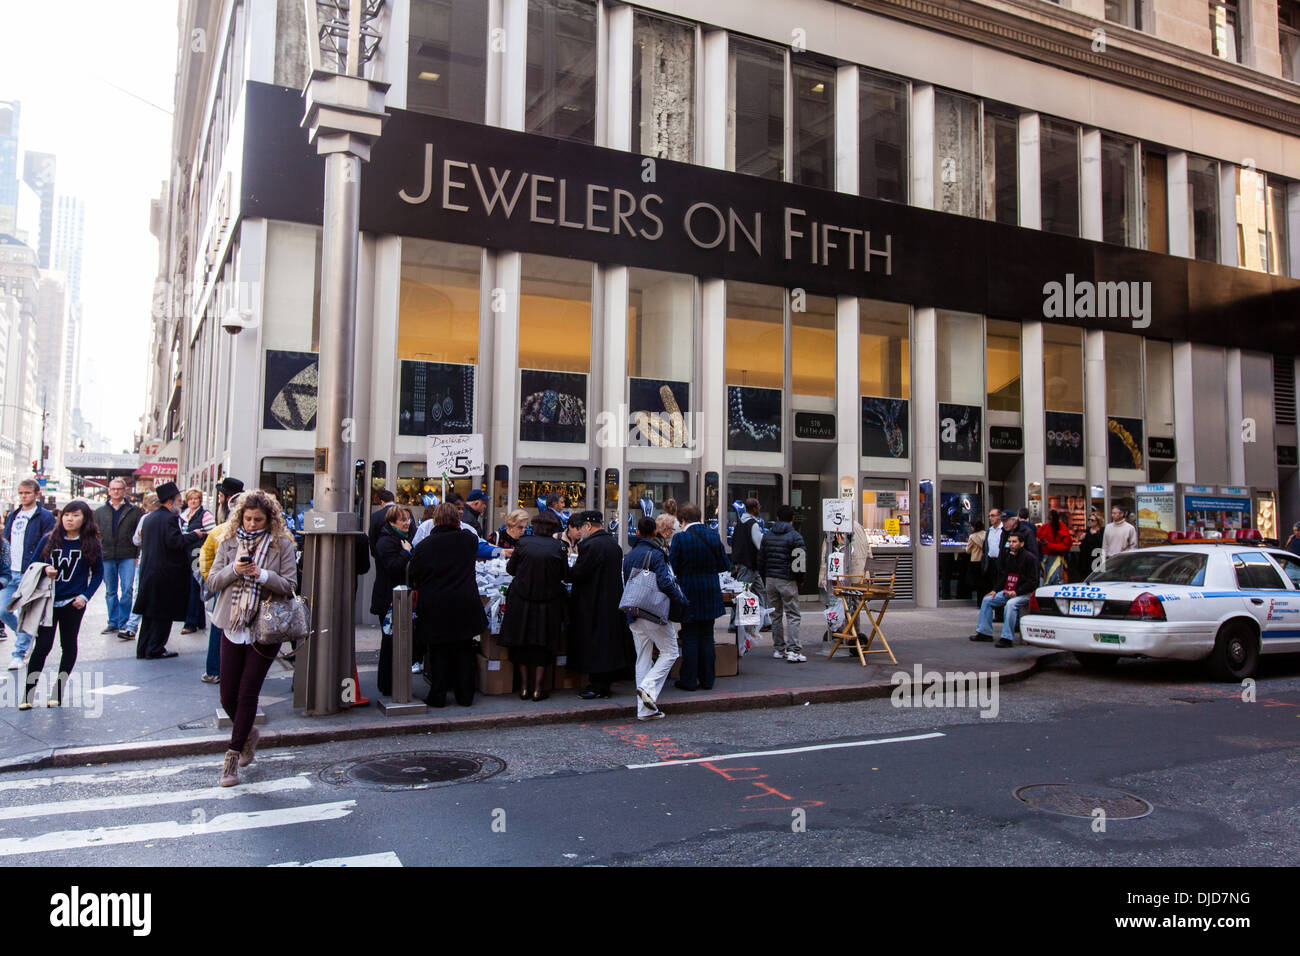 Les bijoutiers de cinquième, Cinquième Avenue, New York City, États-Unis d'Amérique. Banque D'Images